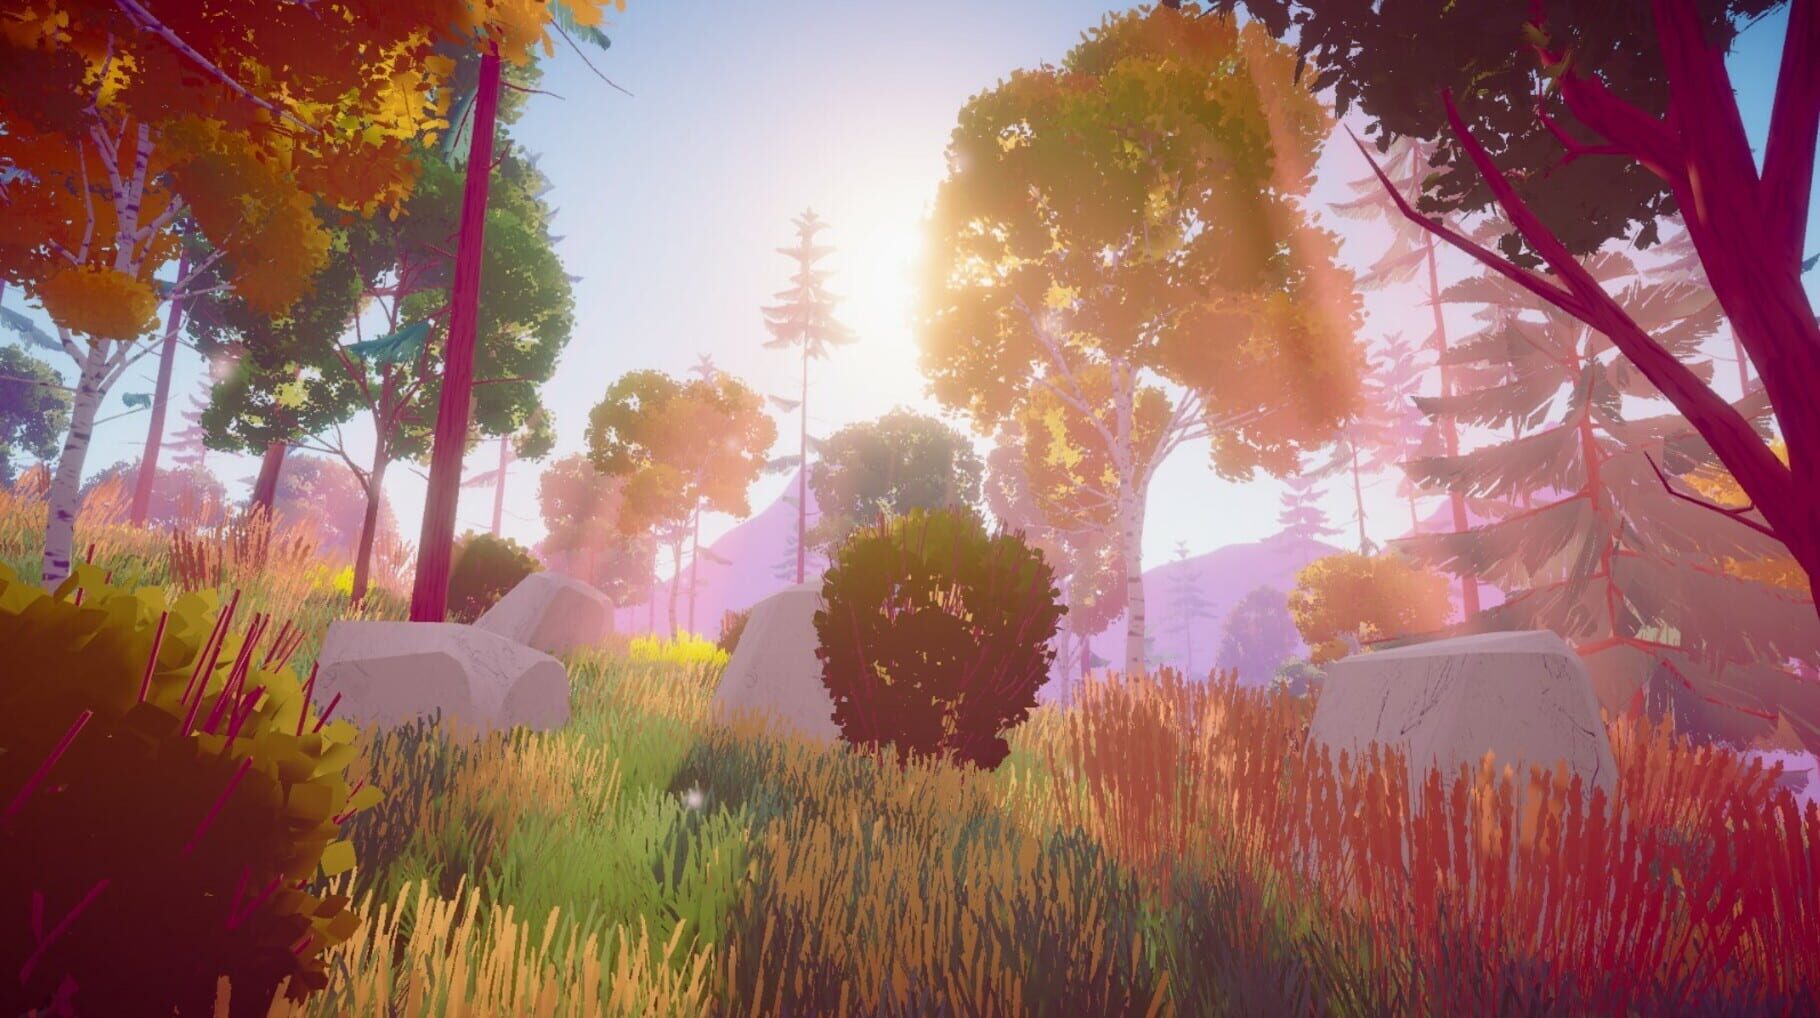 Hike Isle screenshot